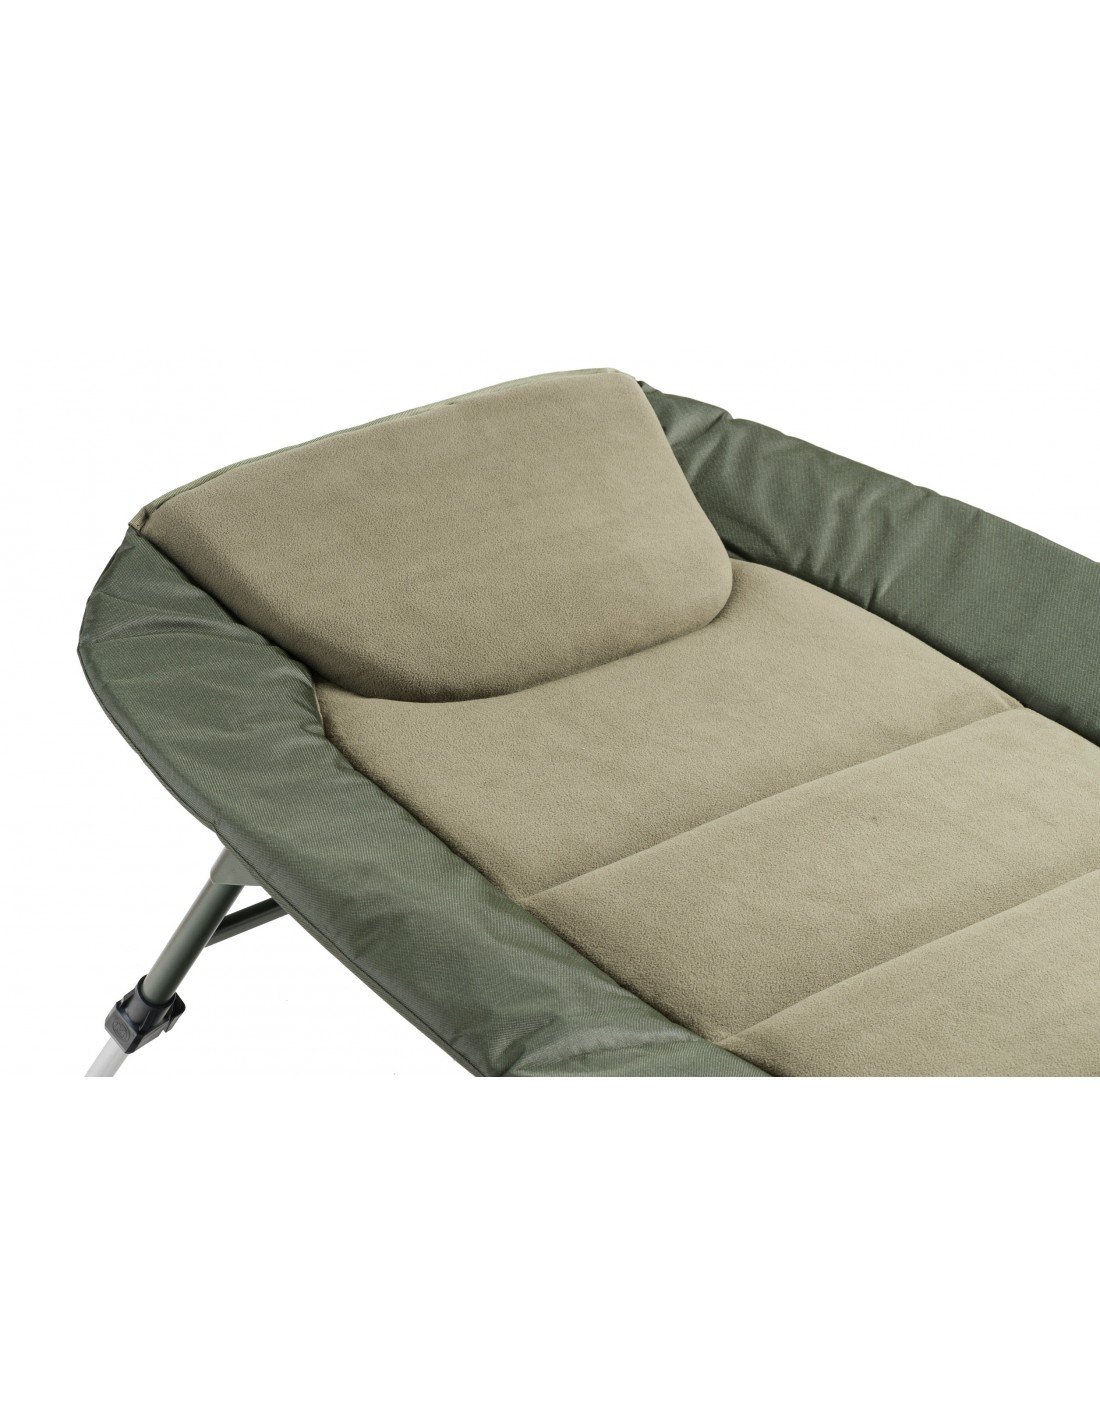 Mivardi Bedchair Comfort XL8 легло